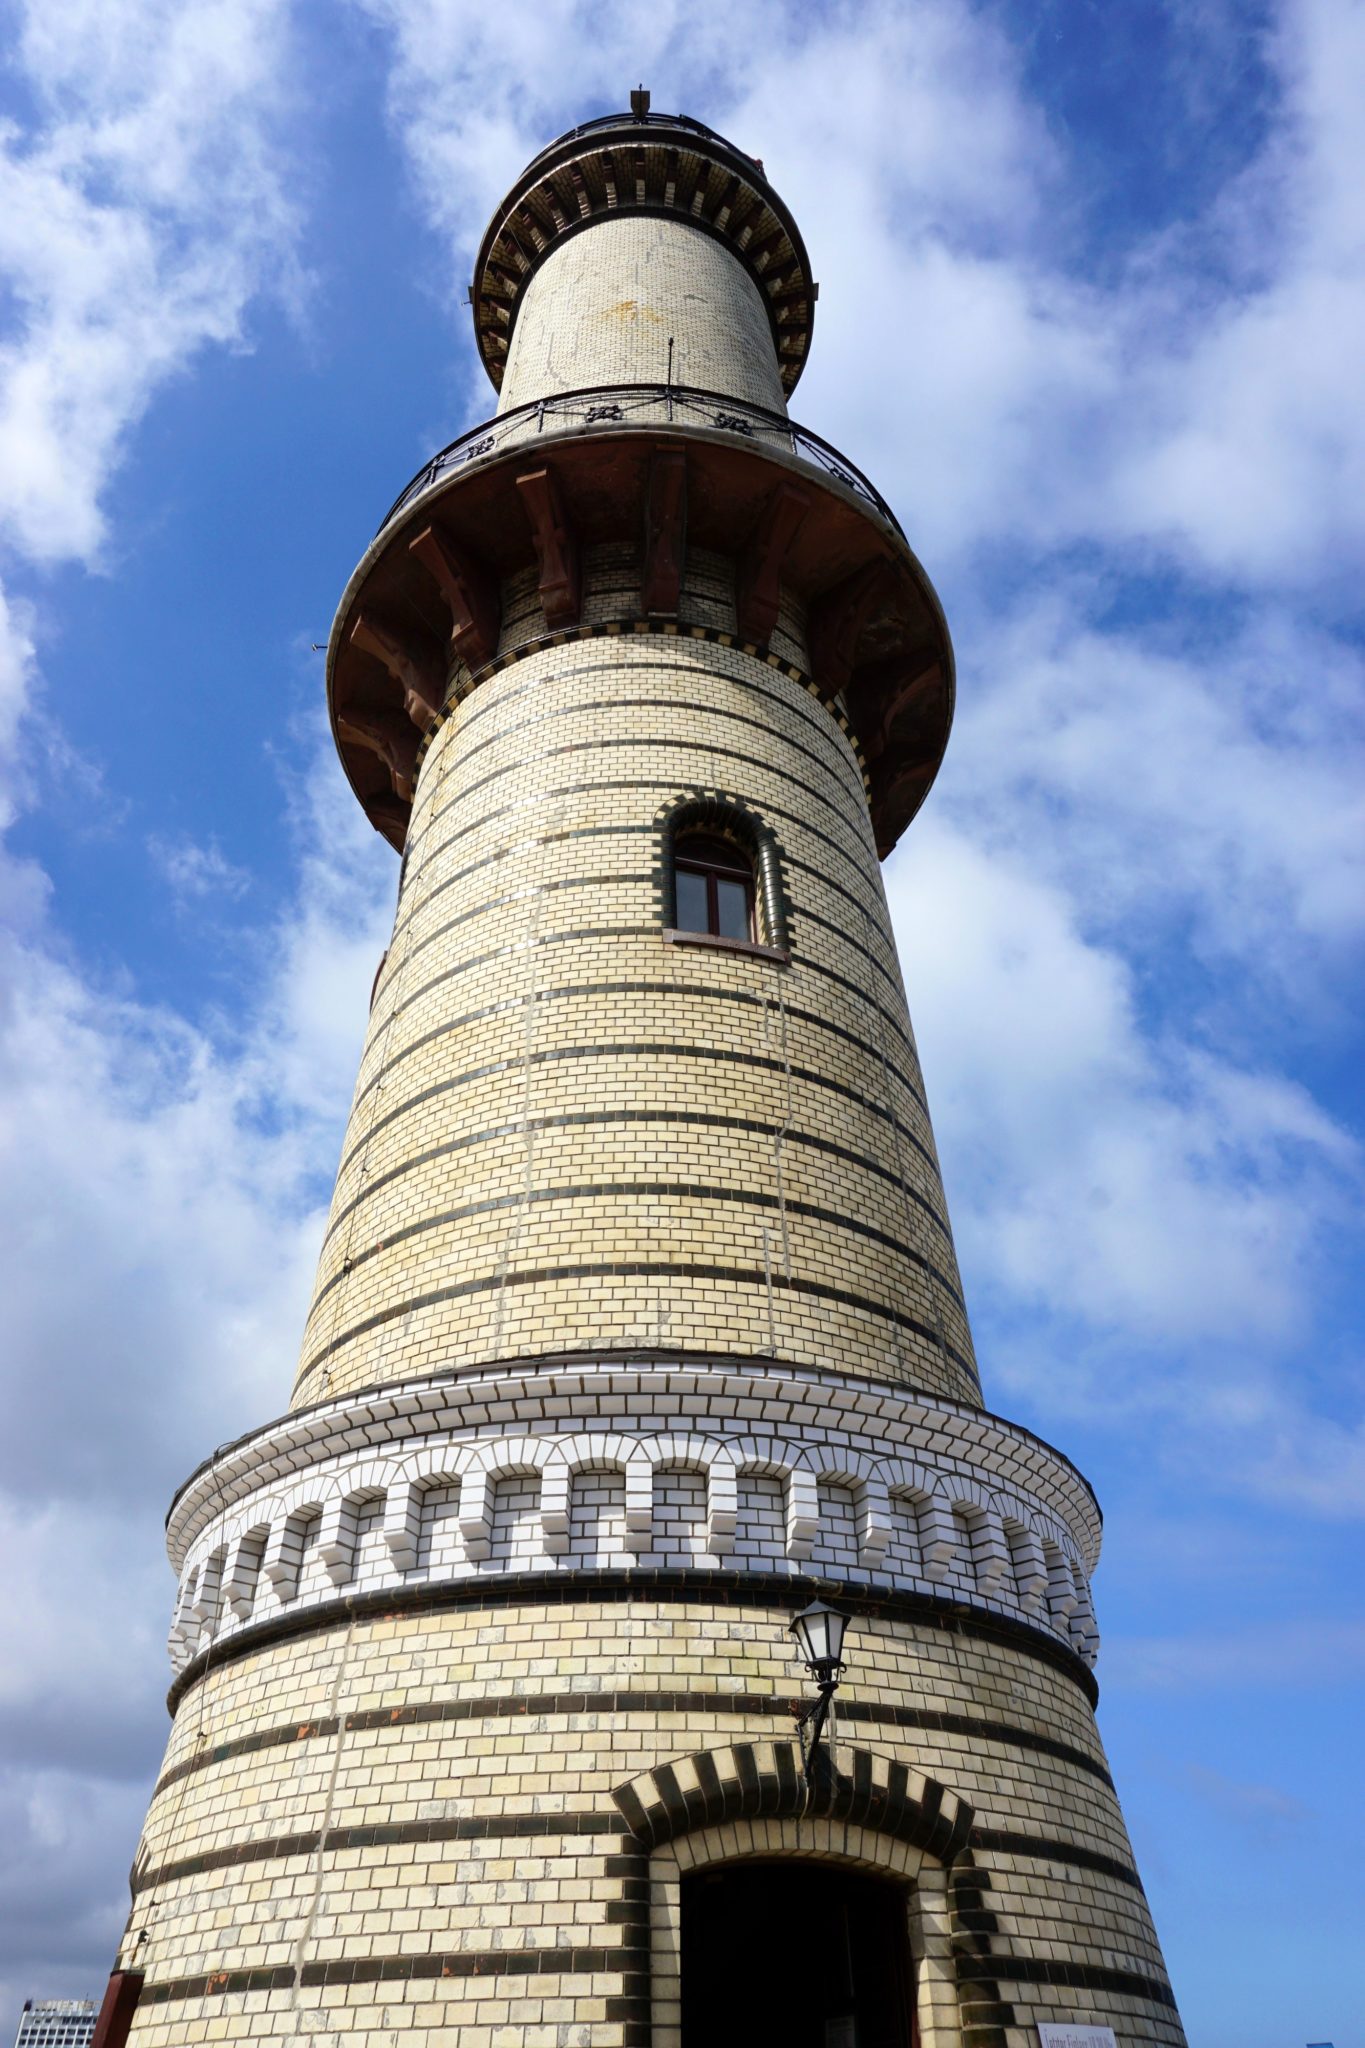 The Warnemünde lighthouse.